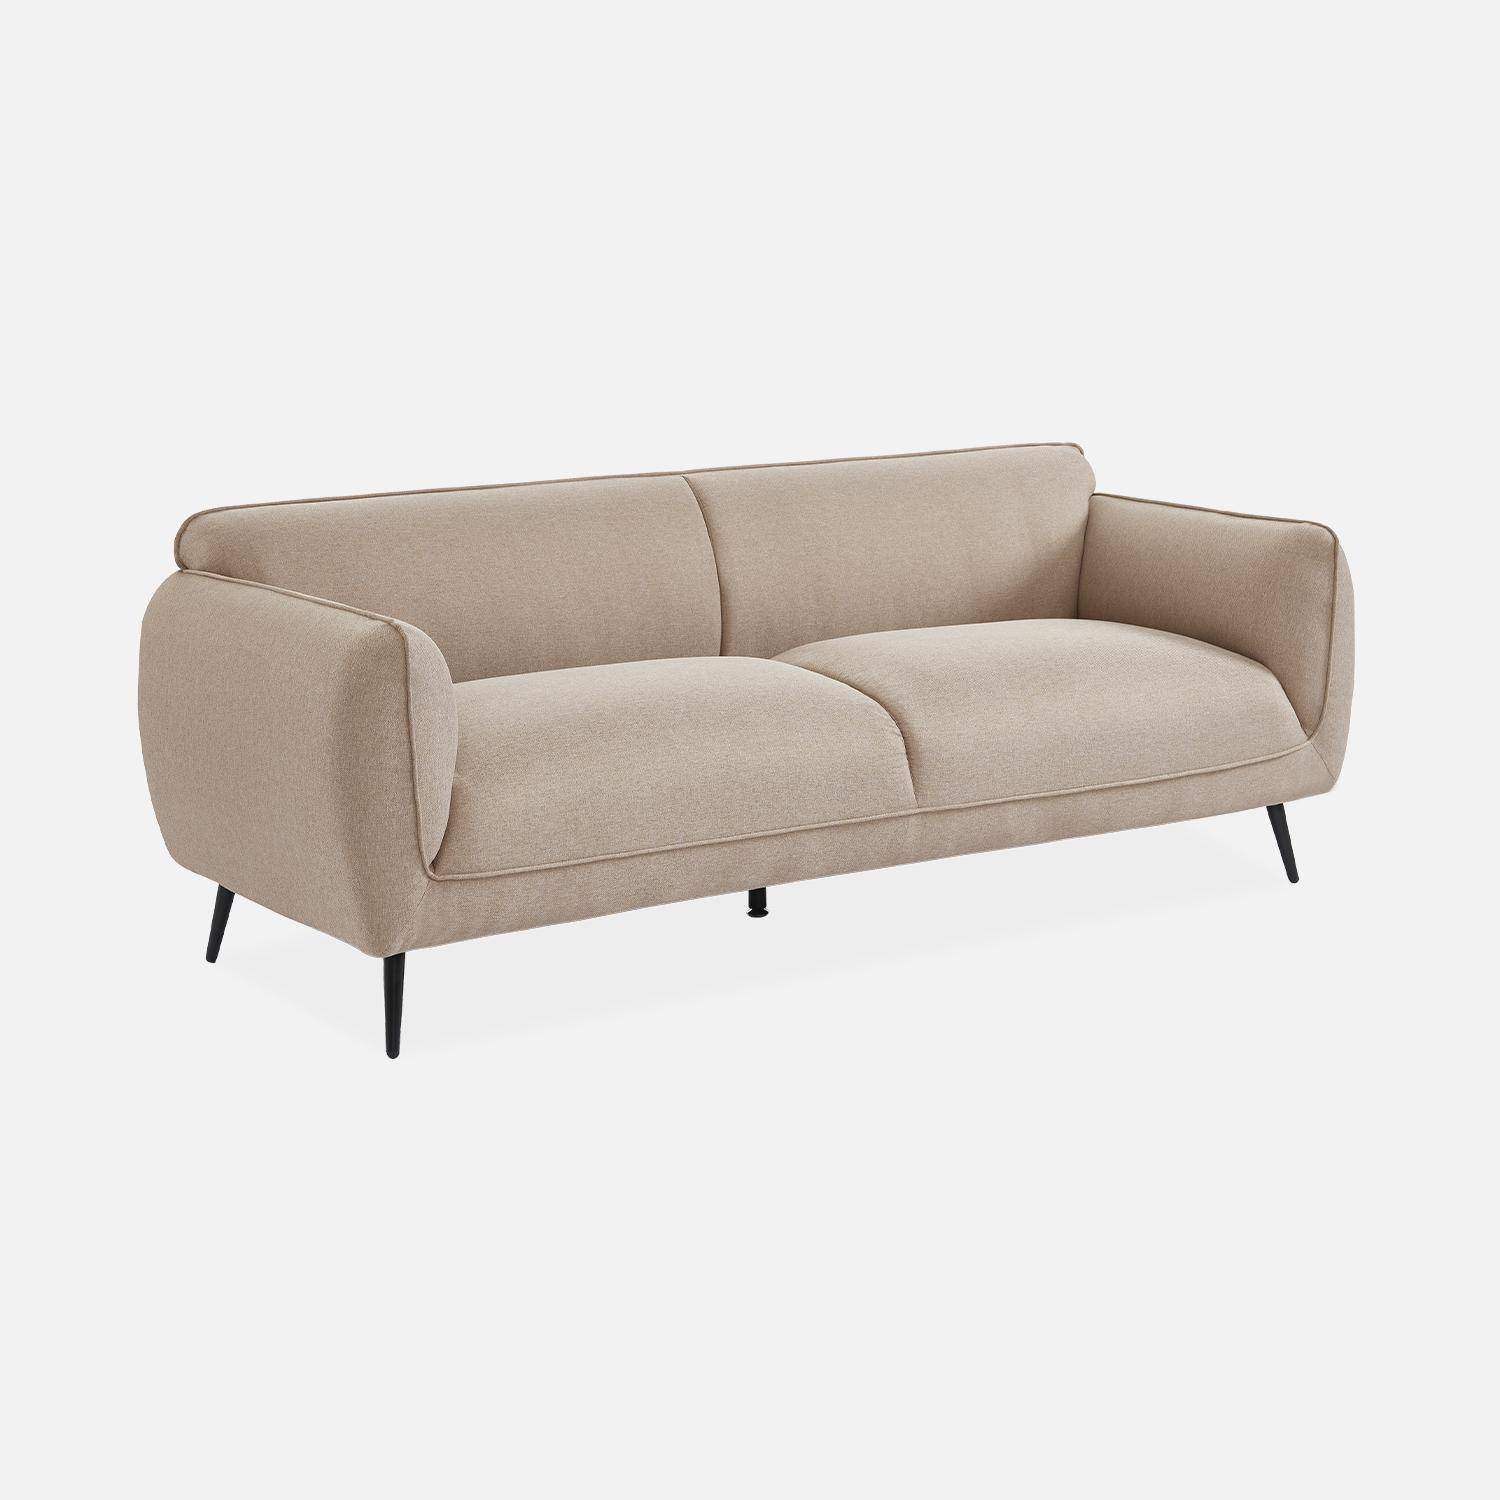 3-Sitzer-Sofa mit Stoffbezug in beige und schwarzen Metallfüßen - Soft,sweeek,Photo3